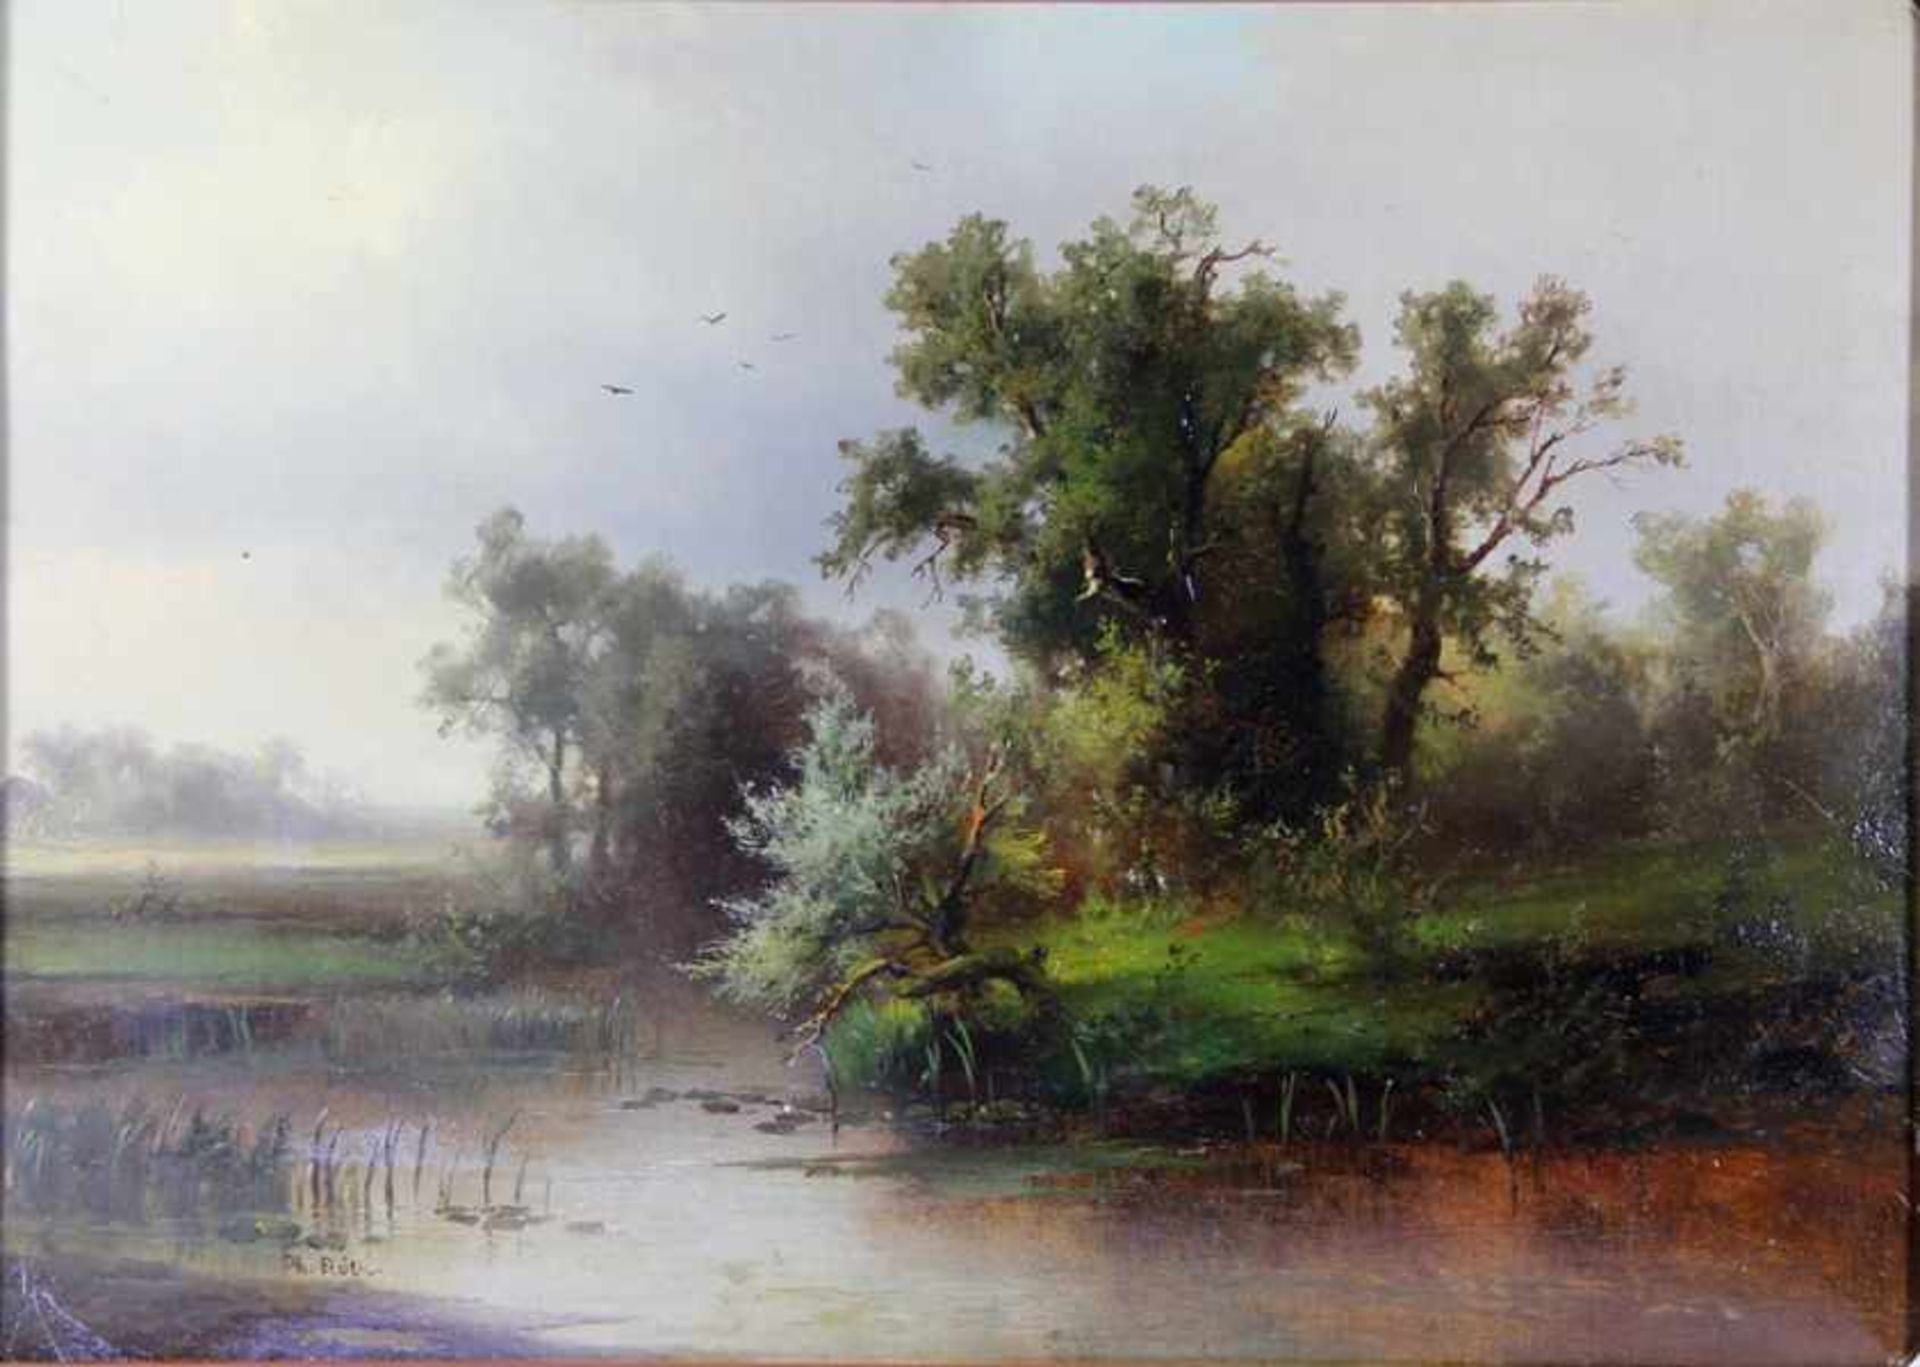 Röth, Philipp1841-1921, idyllische Gewässerlandschaft, am Ufer knorrige Bäume u. Sträucher, im